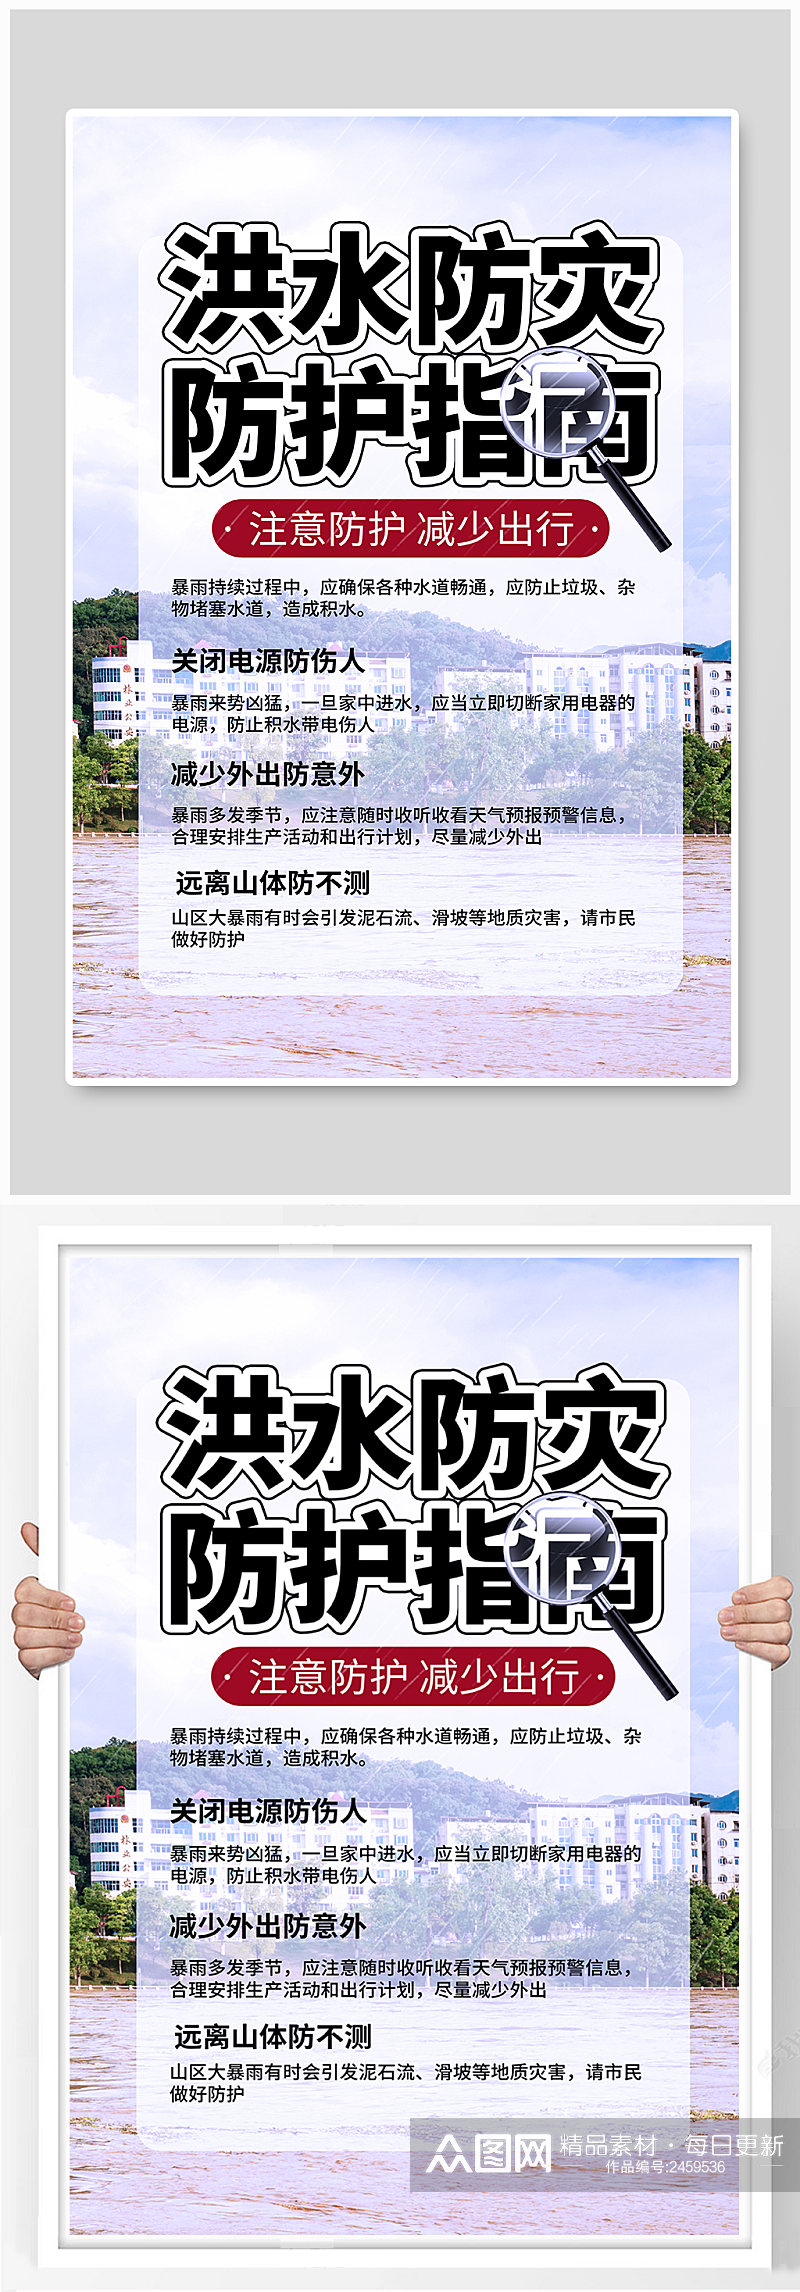 洪水防灾防护指南公益宣传海报素材